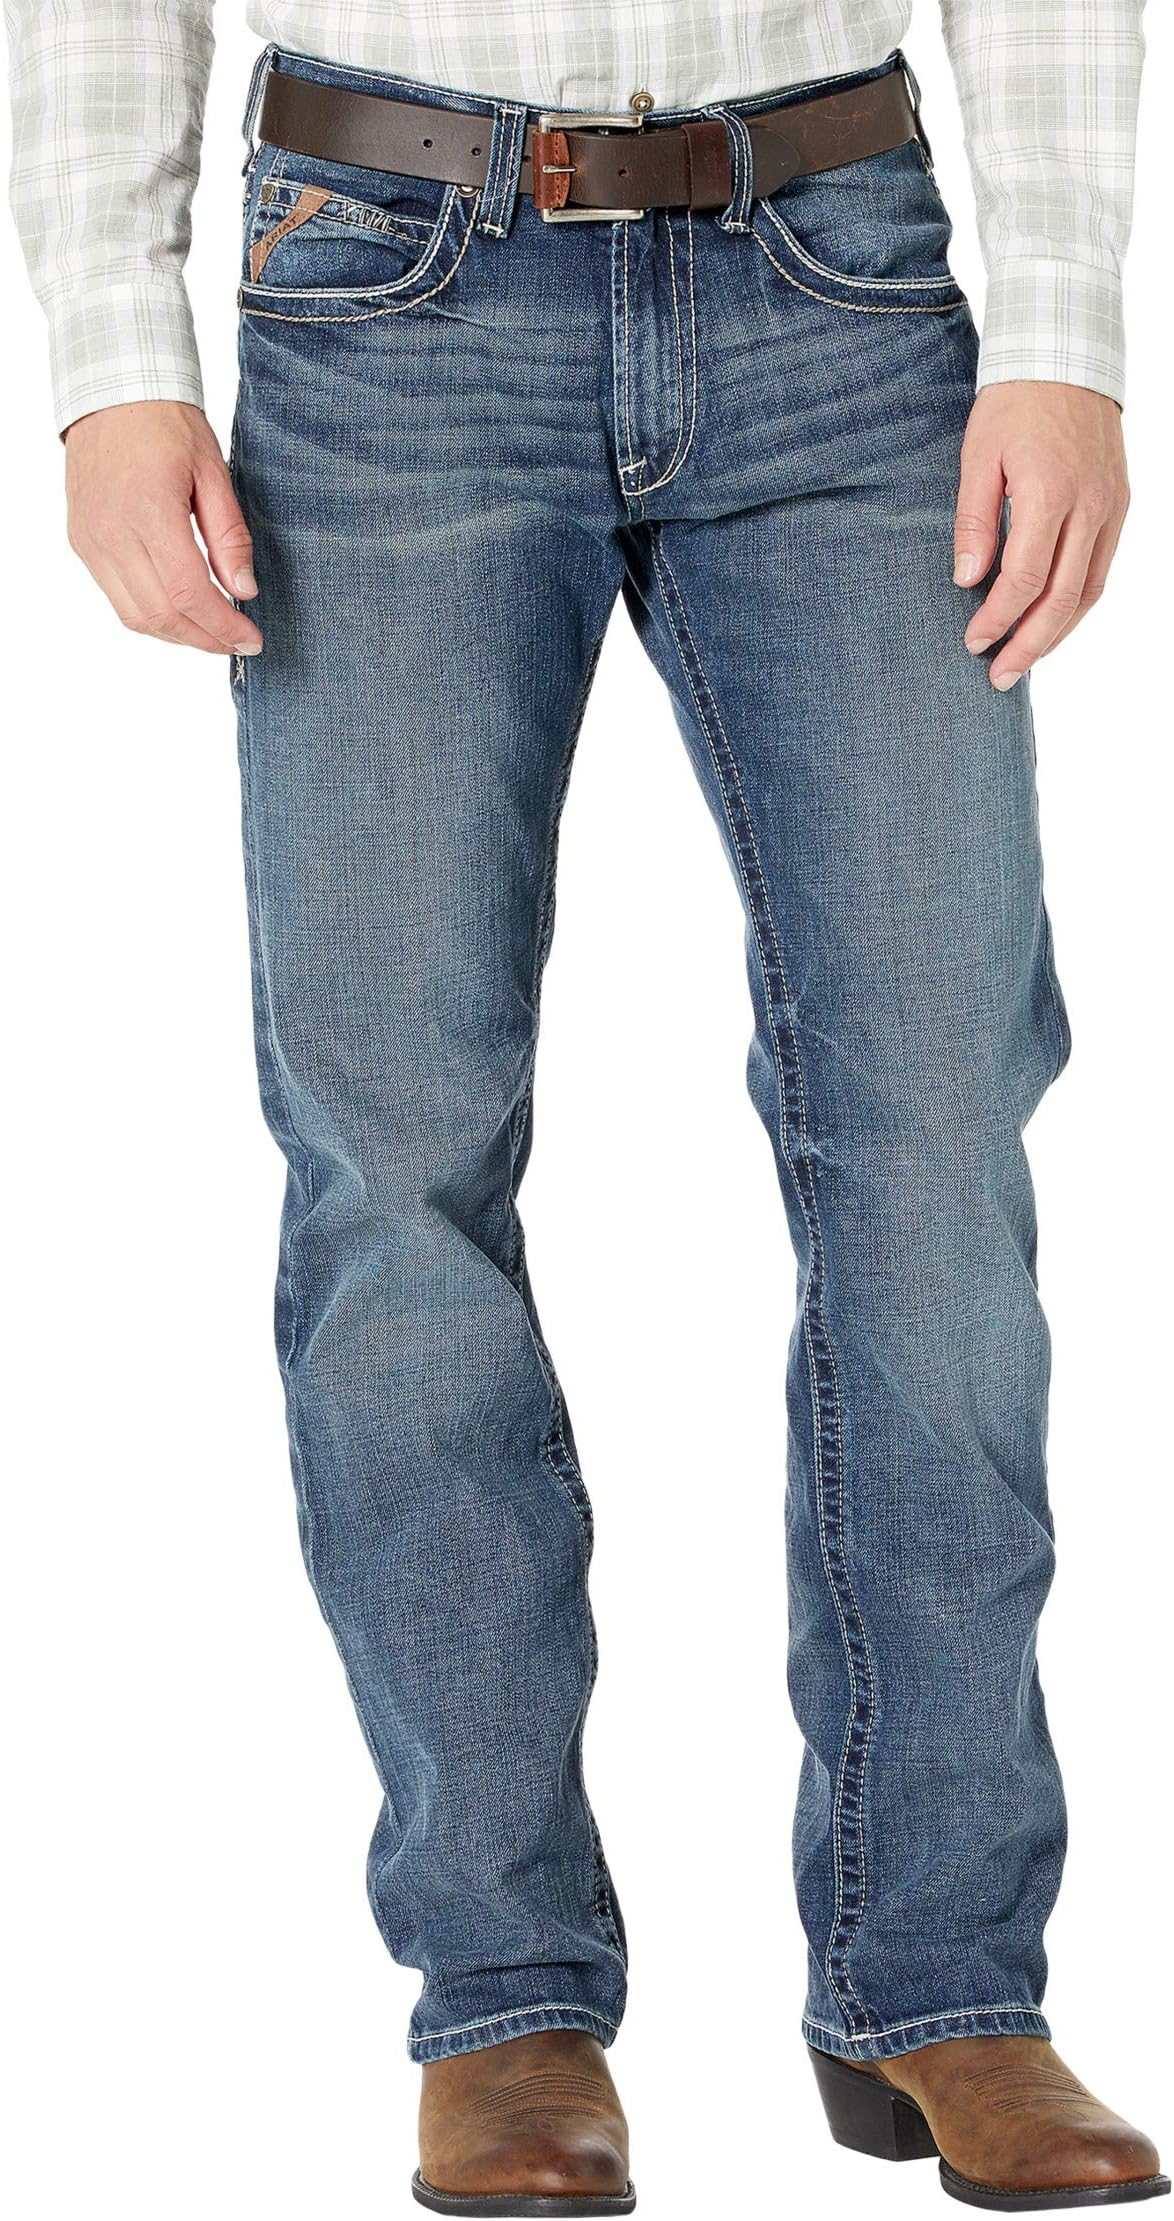 Джинсы M5 Slim Bootcut Jeans in Lennox Ariat, цвет Lennox marion lennox bushfire bride